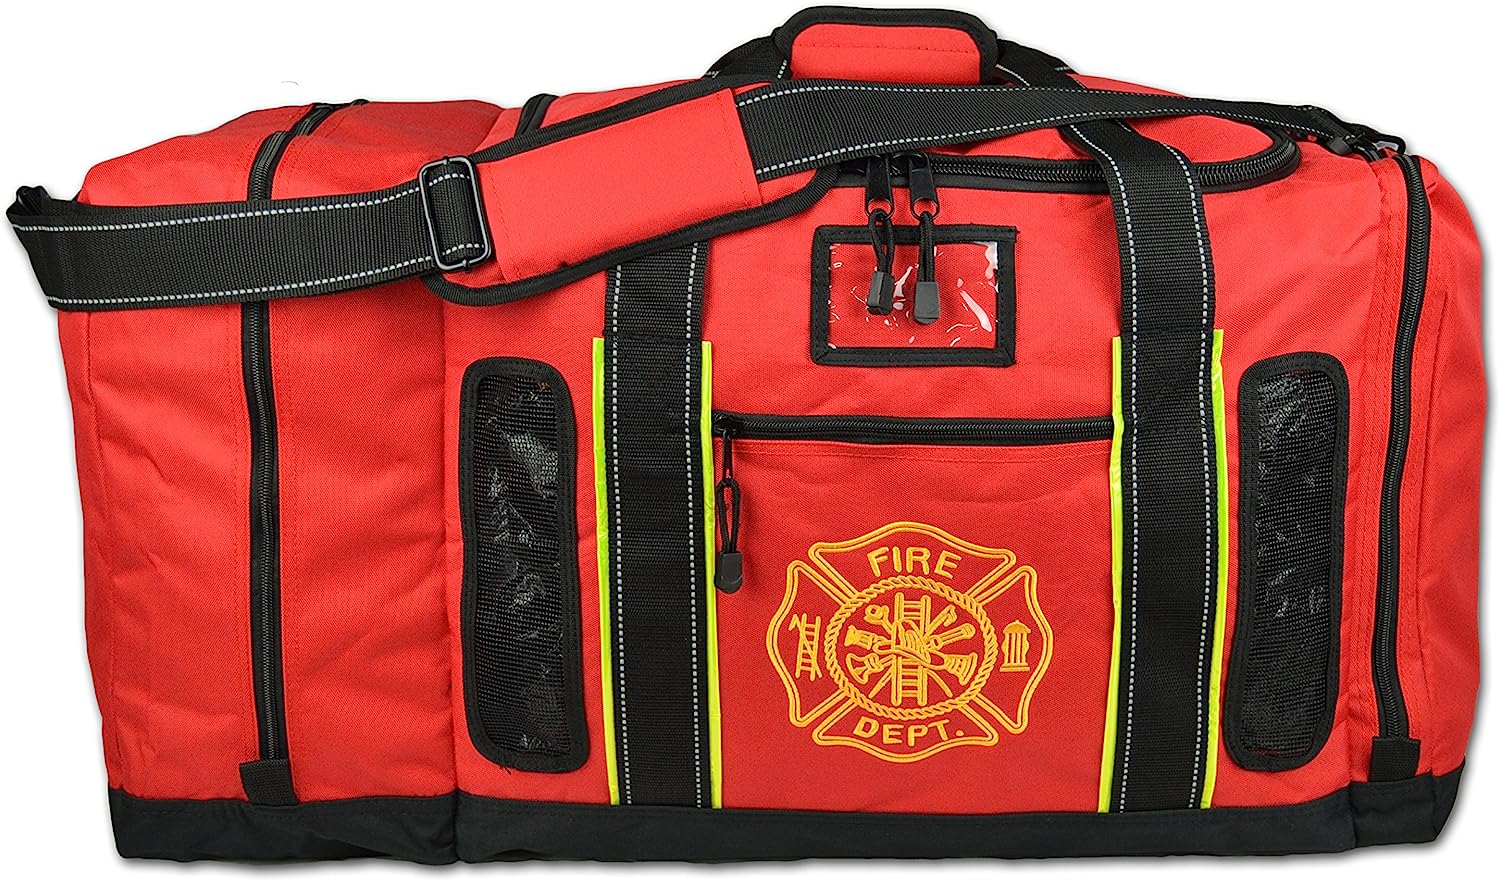 Firefighter Duffel Bag